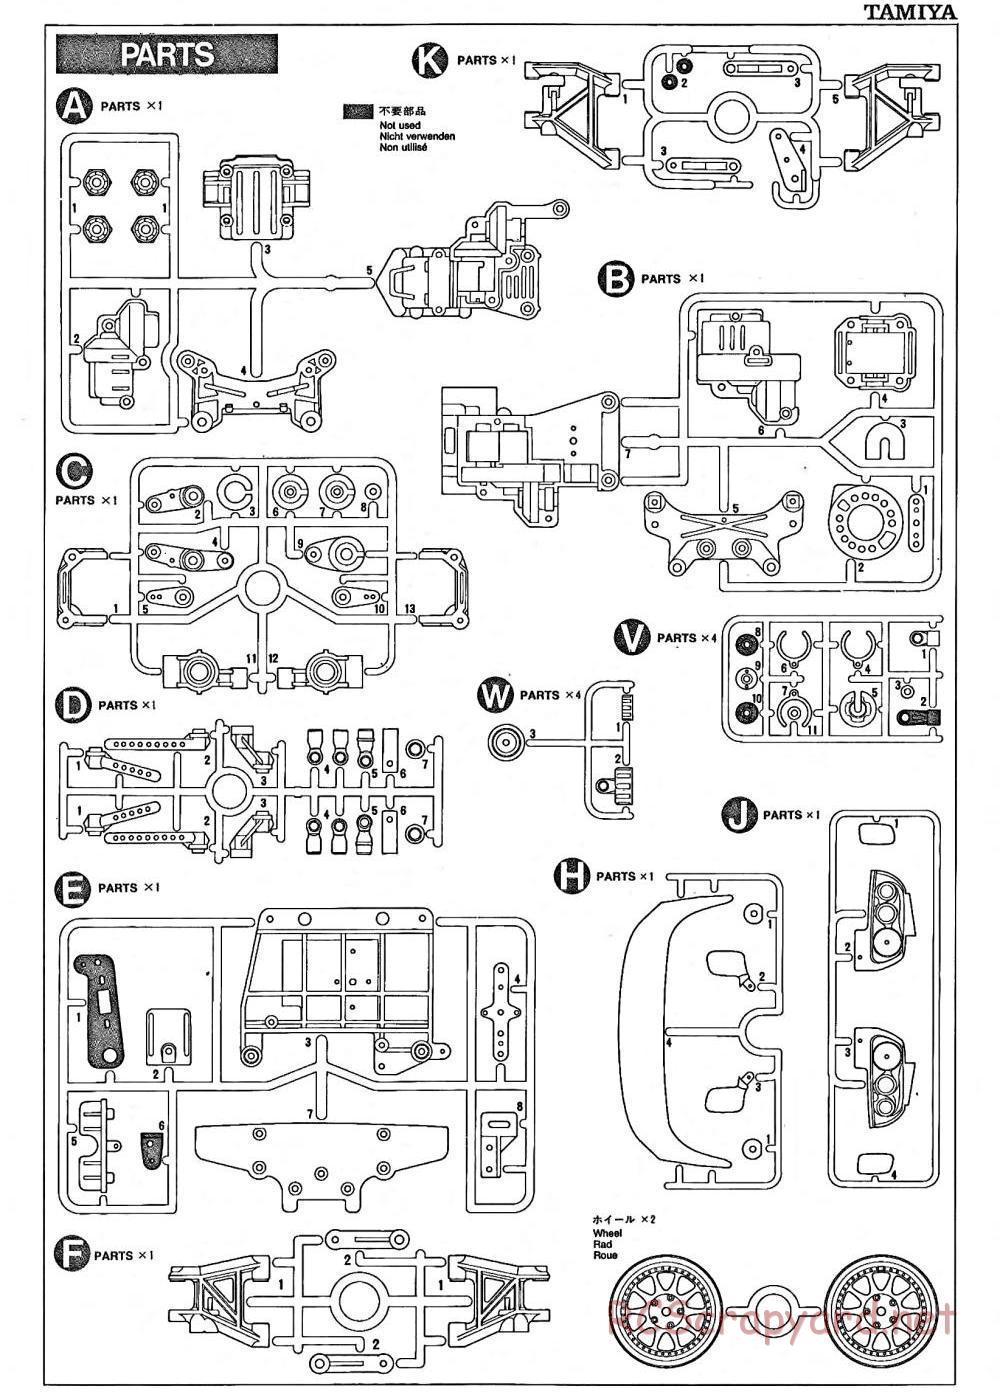 Tamiya - TA-02 Chassis - Manual - Page 13